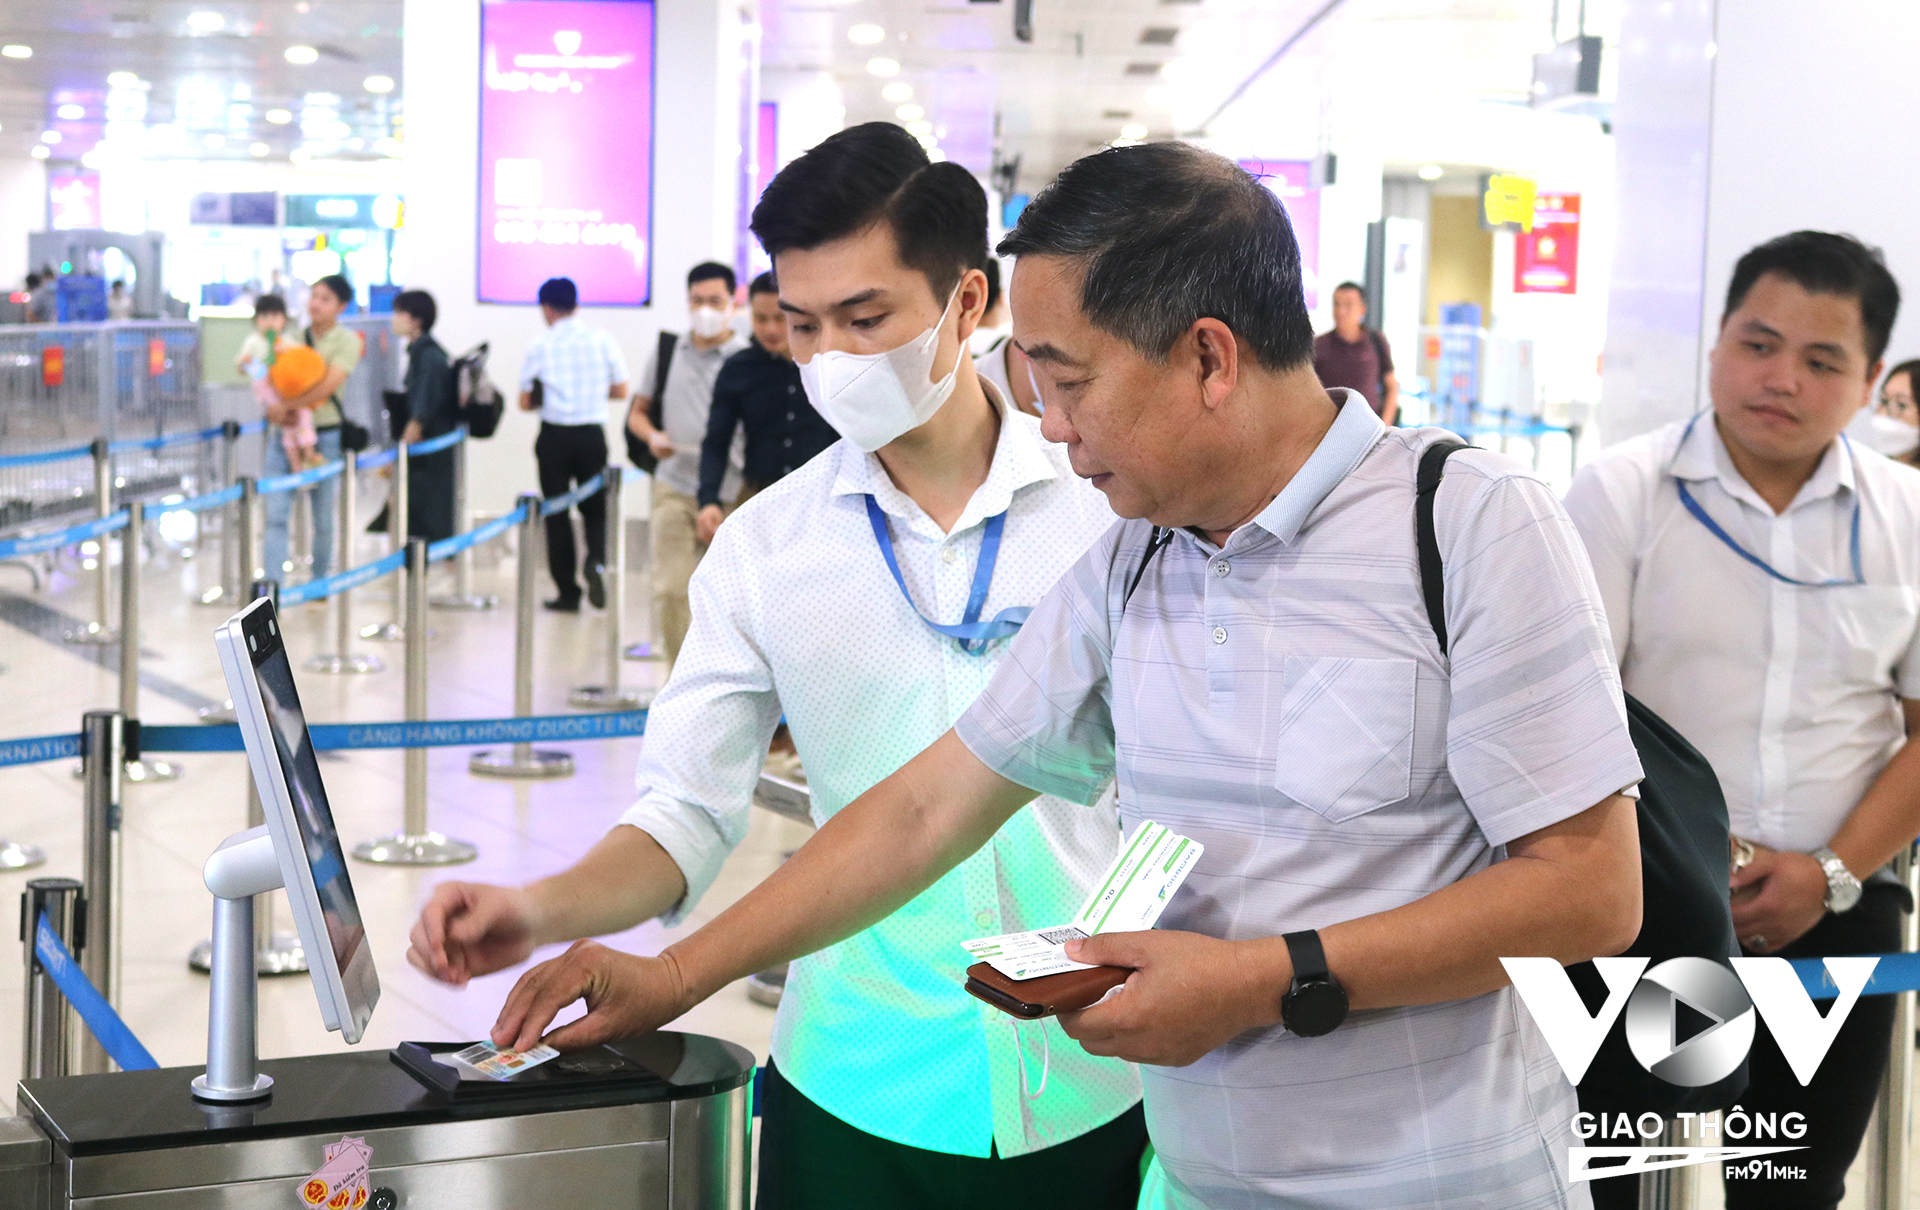 Tại điểm kiểm tra an ninh hành khách nội địa, nhân viên an ninh sẽ quét thẻ căn cước công dân gắn chip và thẻ lên máy bay bằng thiết bị chuyên dụng, đồng thời đối chiếu khuôn mặt của hành khách.